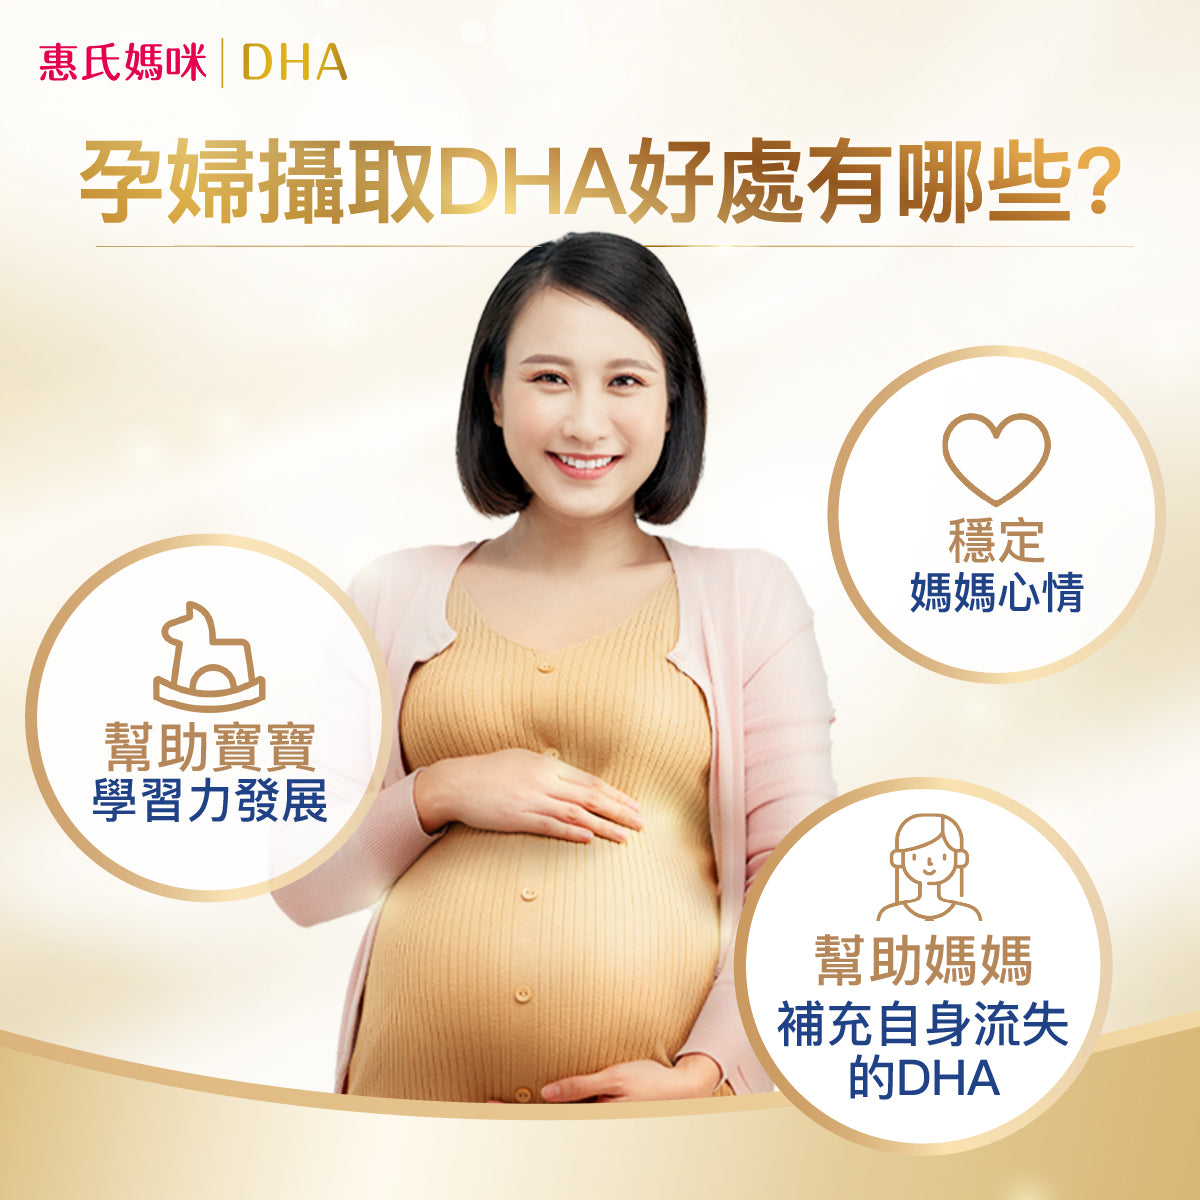 ▲ 孕婦攝取DHA好處包含幫助寶寶學習發展、穩定媽媽心情並補充自身流失的DHA